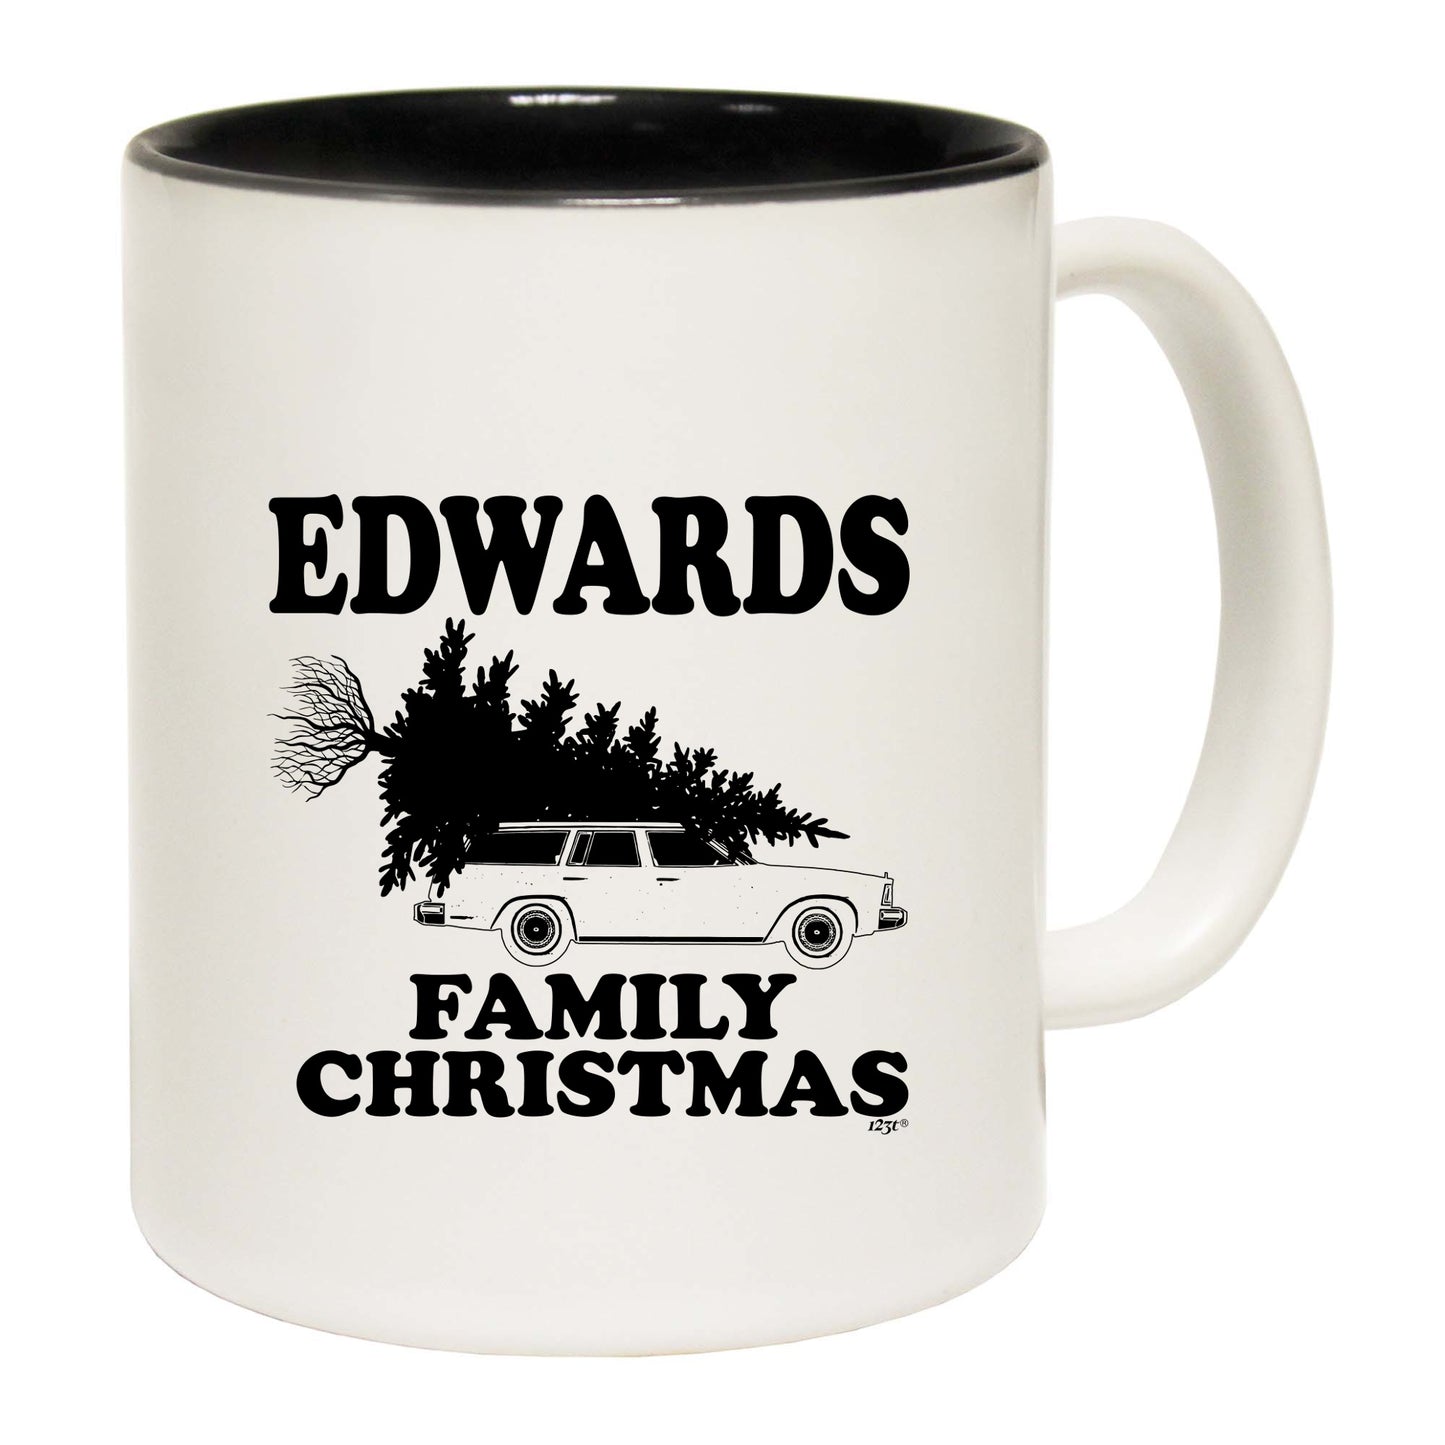 The Christmas Hub - Family Christmas Edwards - Funny Coffee Mug